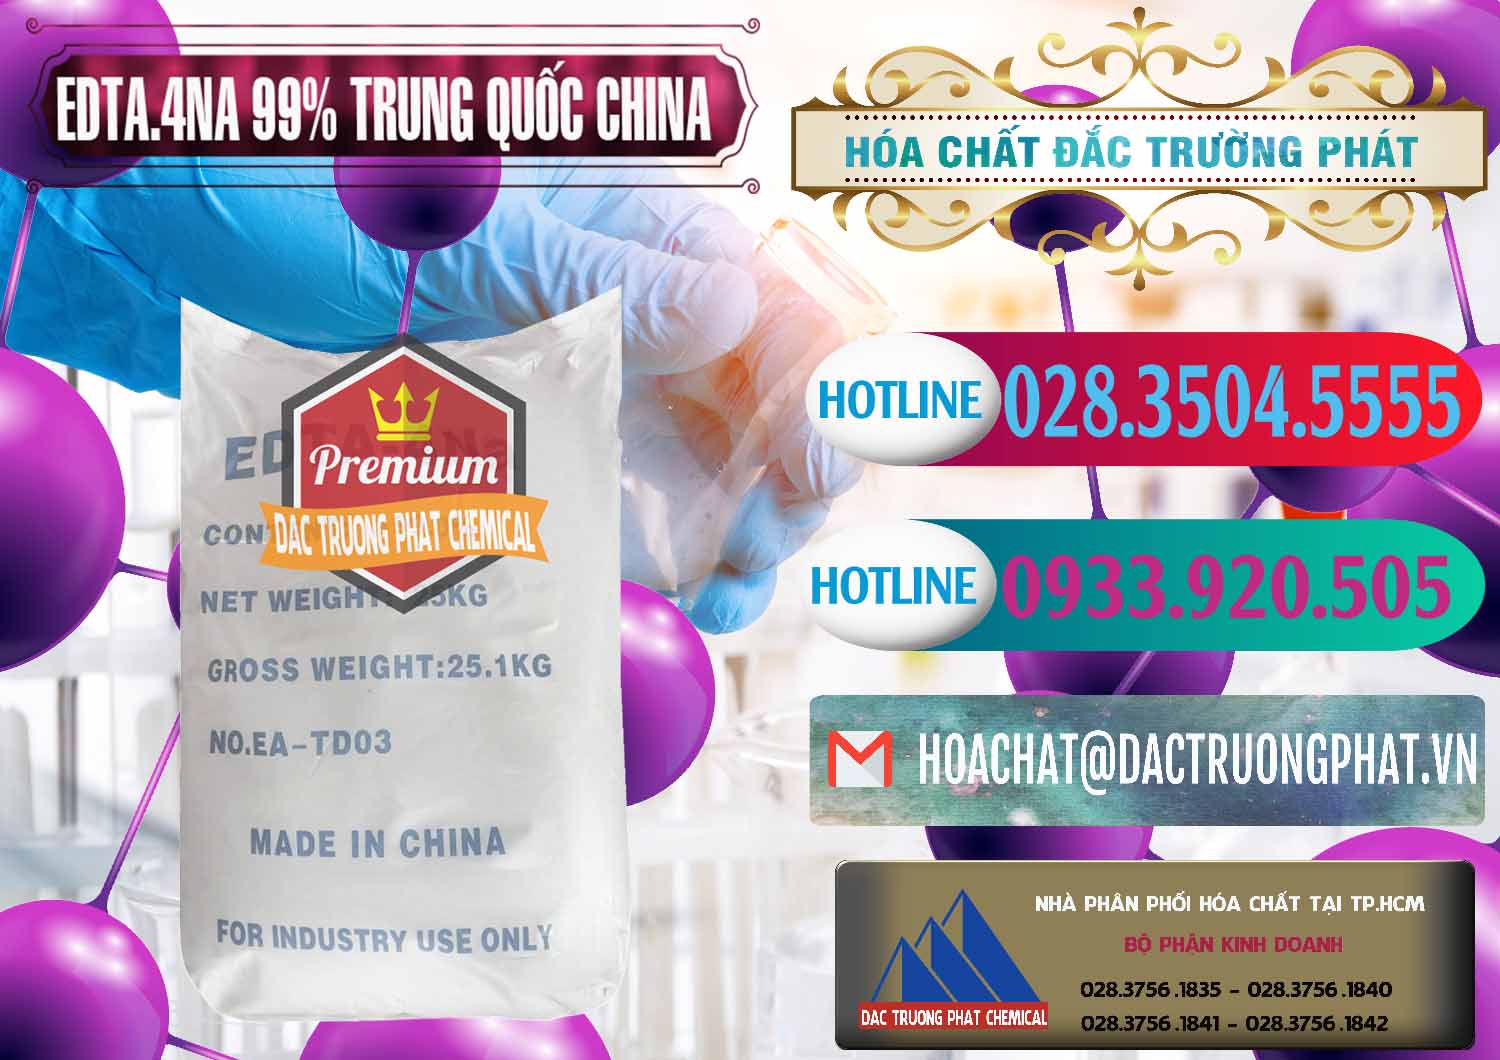 Đơn vị bán ( cung cấp ) EDTA.4NA - EDTA Muối 99% Trung Quốc China - 0292 - Cty nhập khẩu và cung cấp hóa chất tại TP.HCM - truongphat.vn